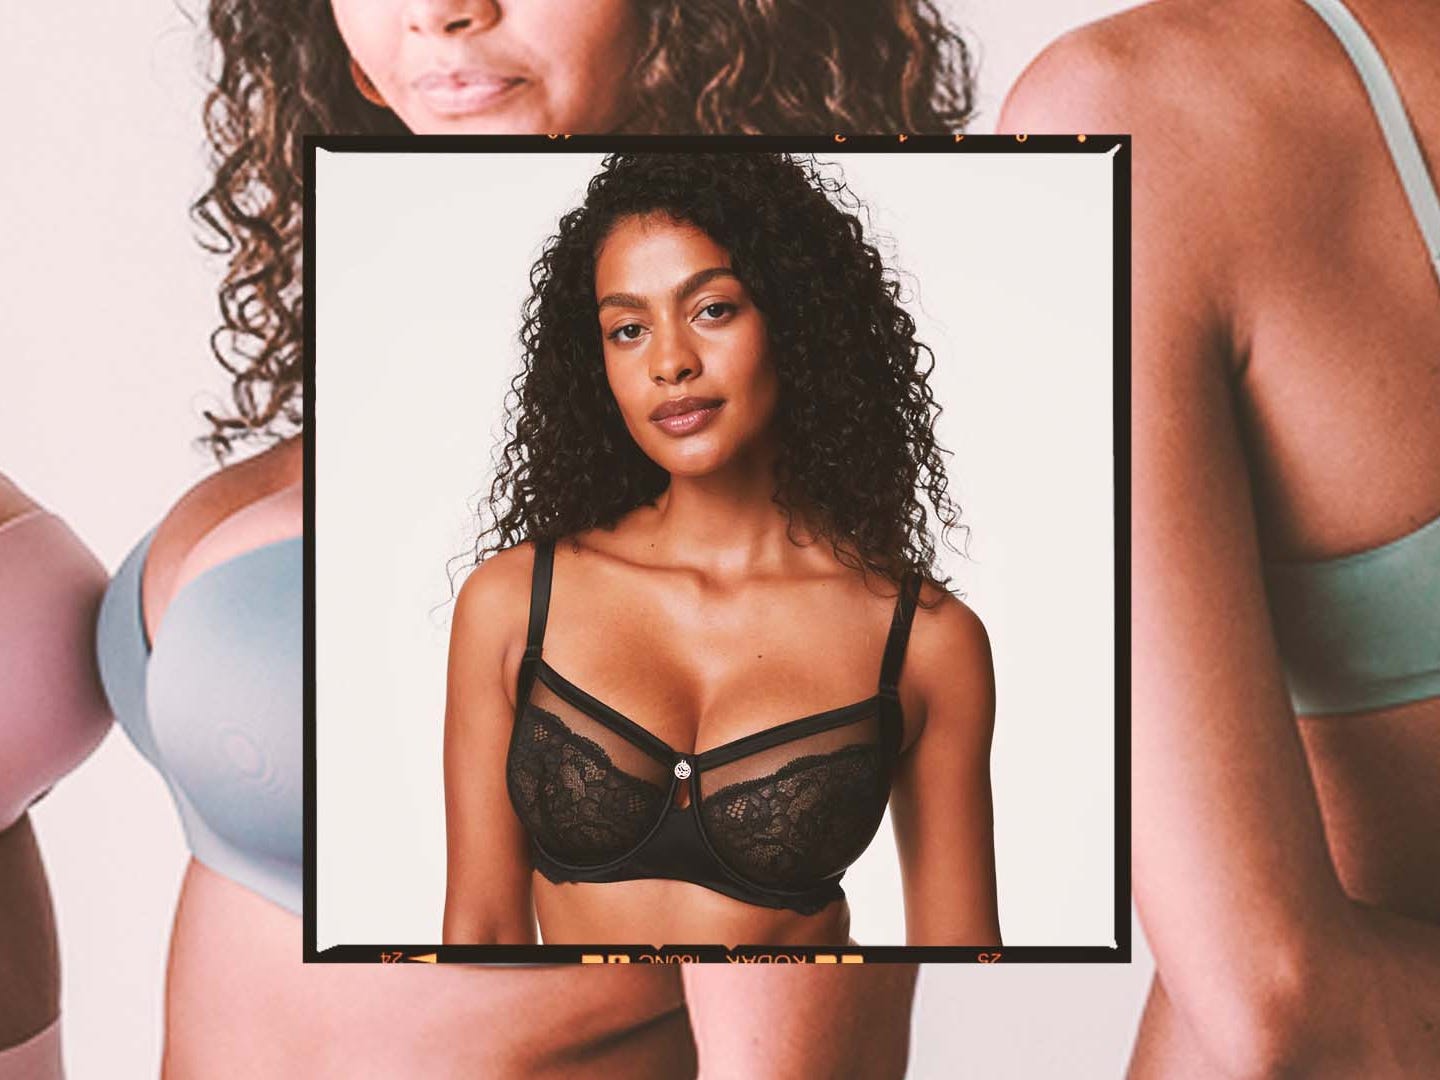 annaiz turneran share big boobs in bras pics photos